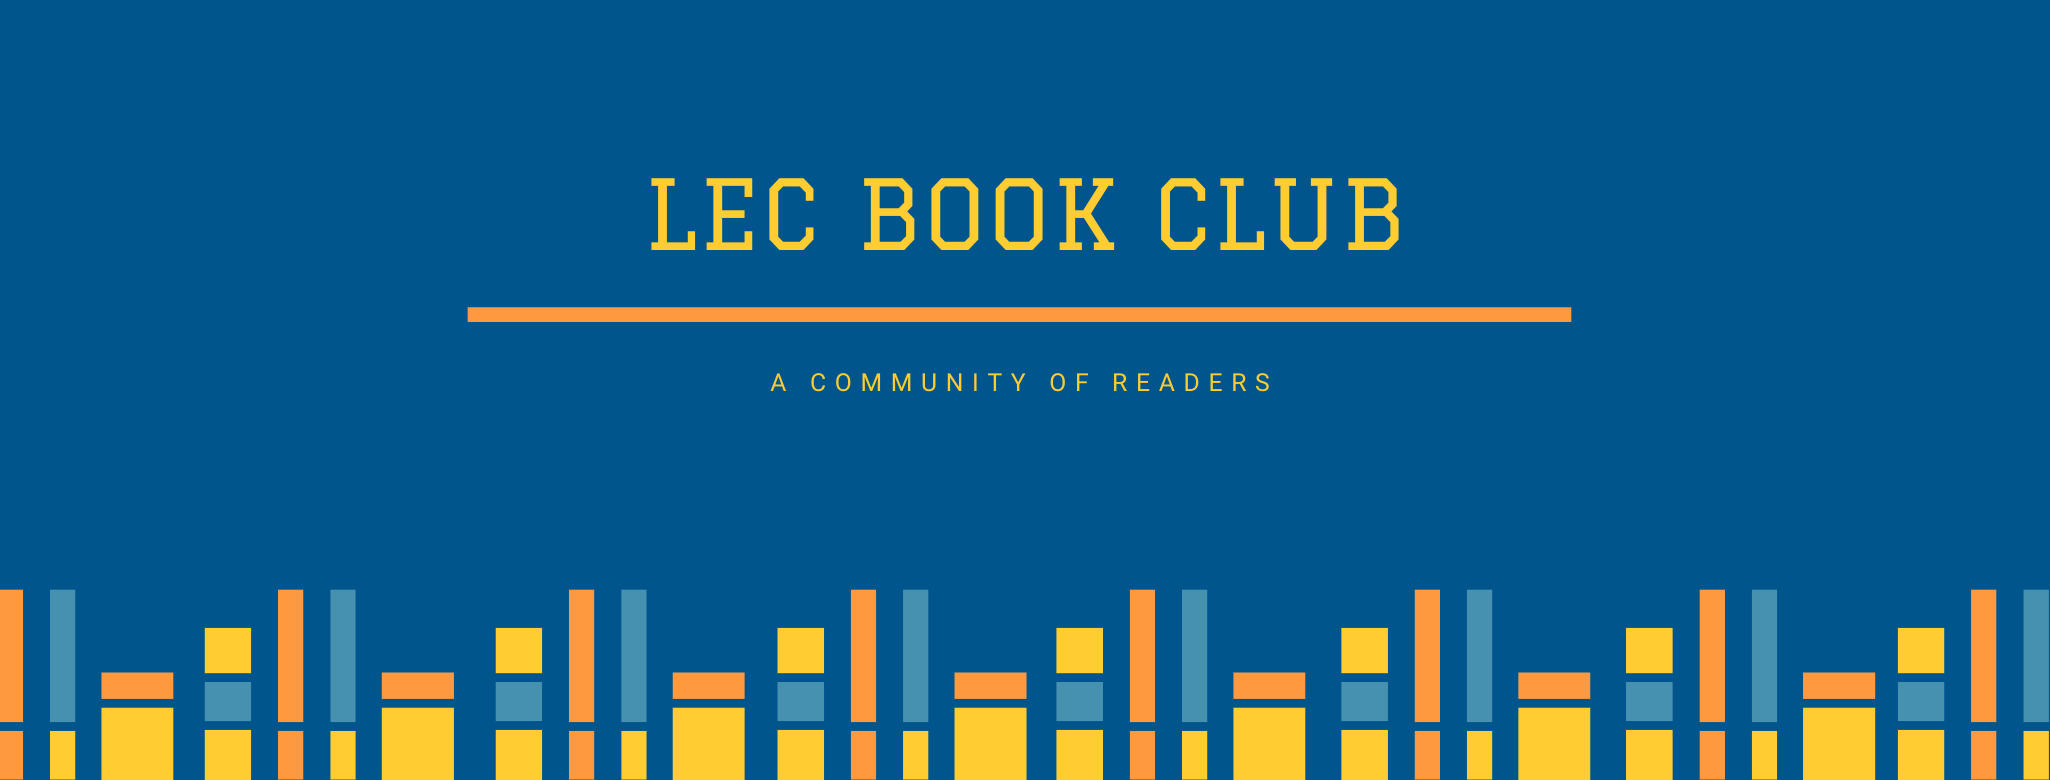 lec book club.png